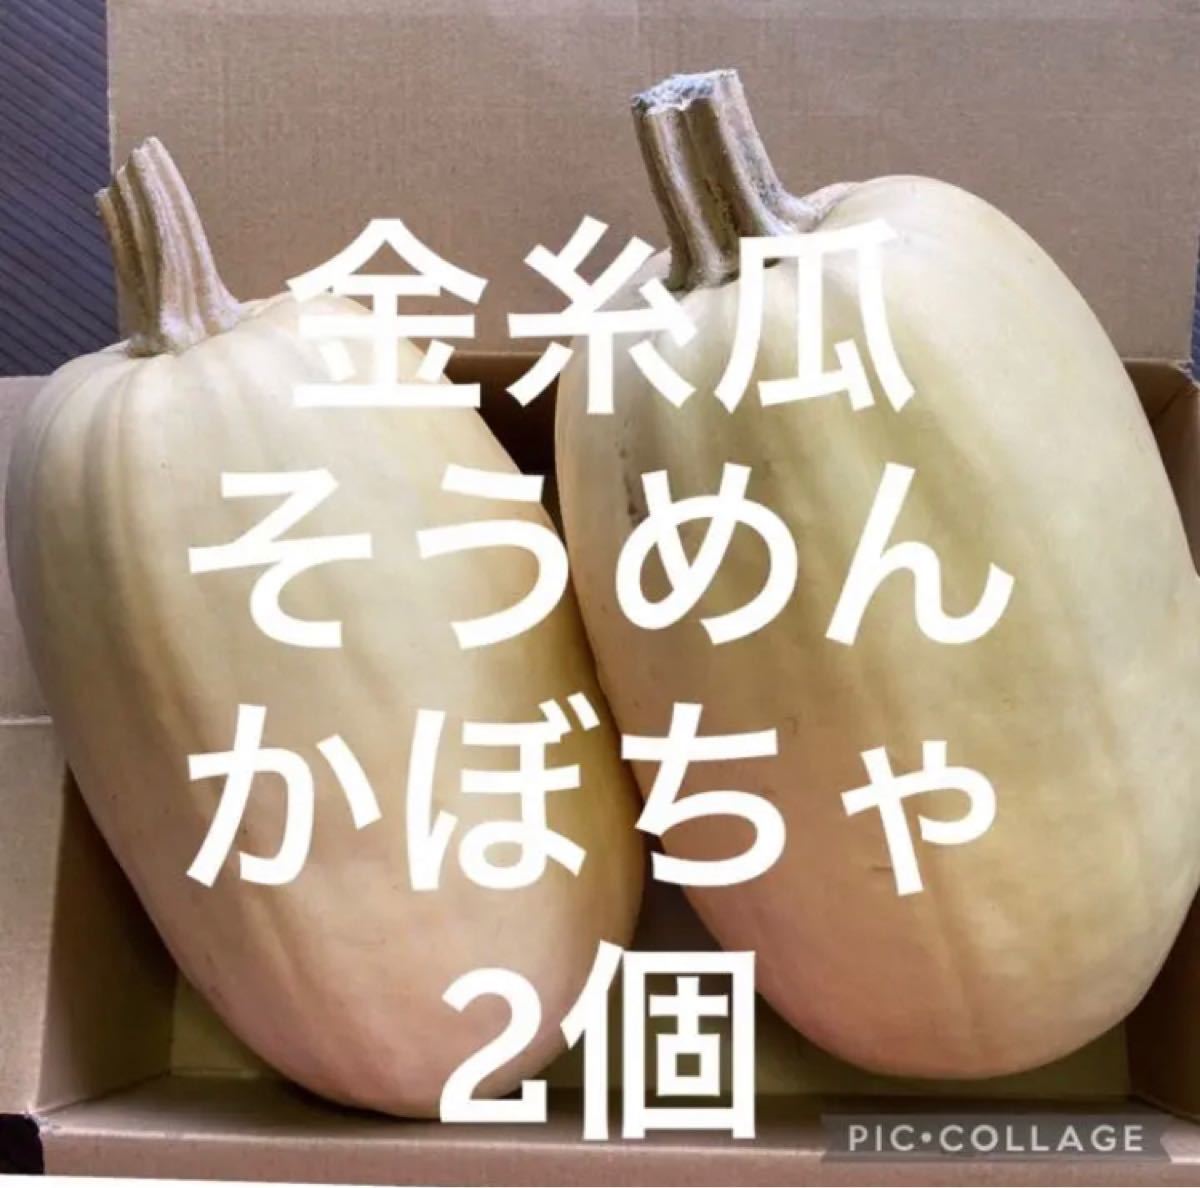 秋田県産 金糸瓜 そうめんかぼちゃ 2個 8/17収穫と8/21収穫